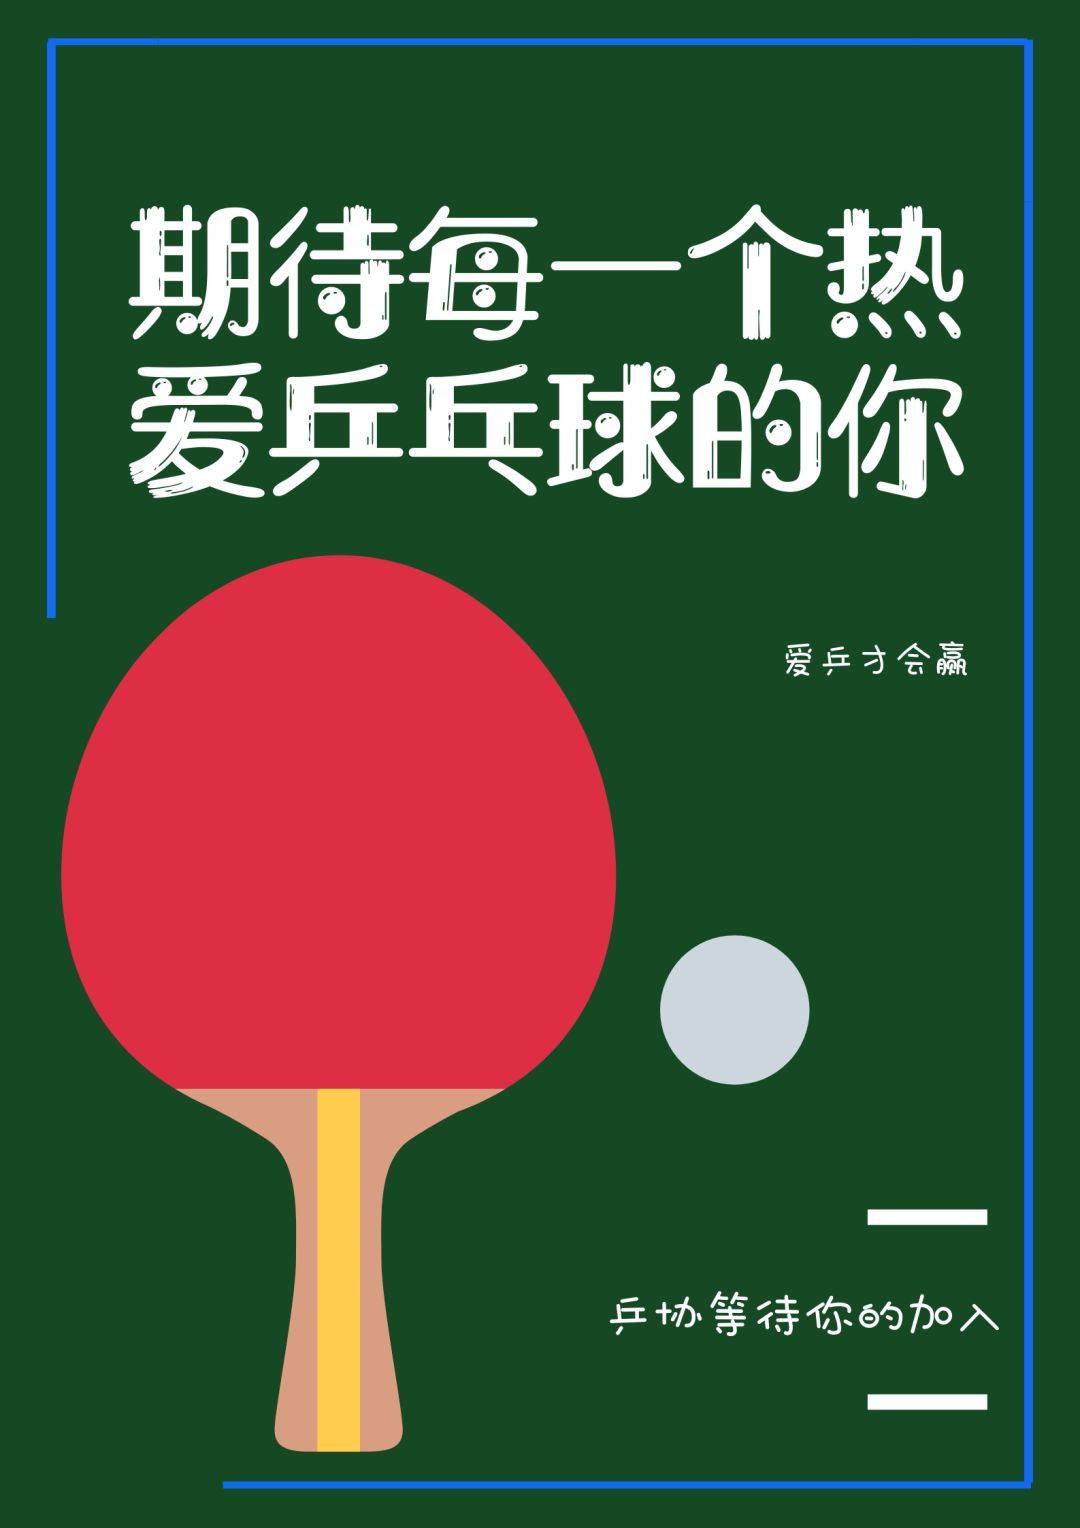 社团纳新 | 乒乓球协会纳新了!